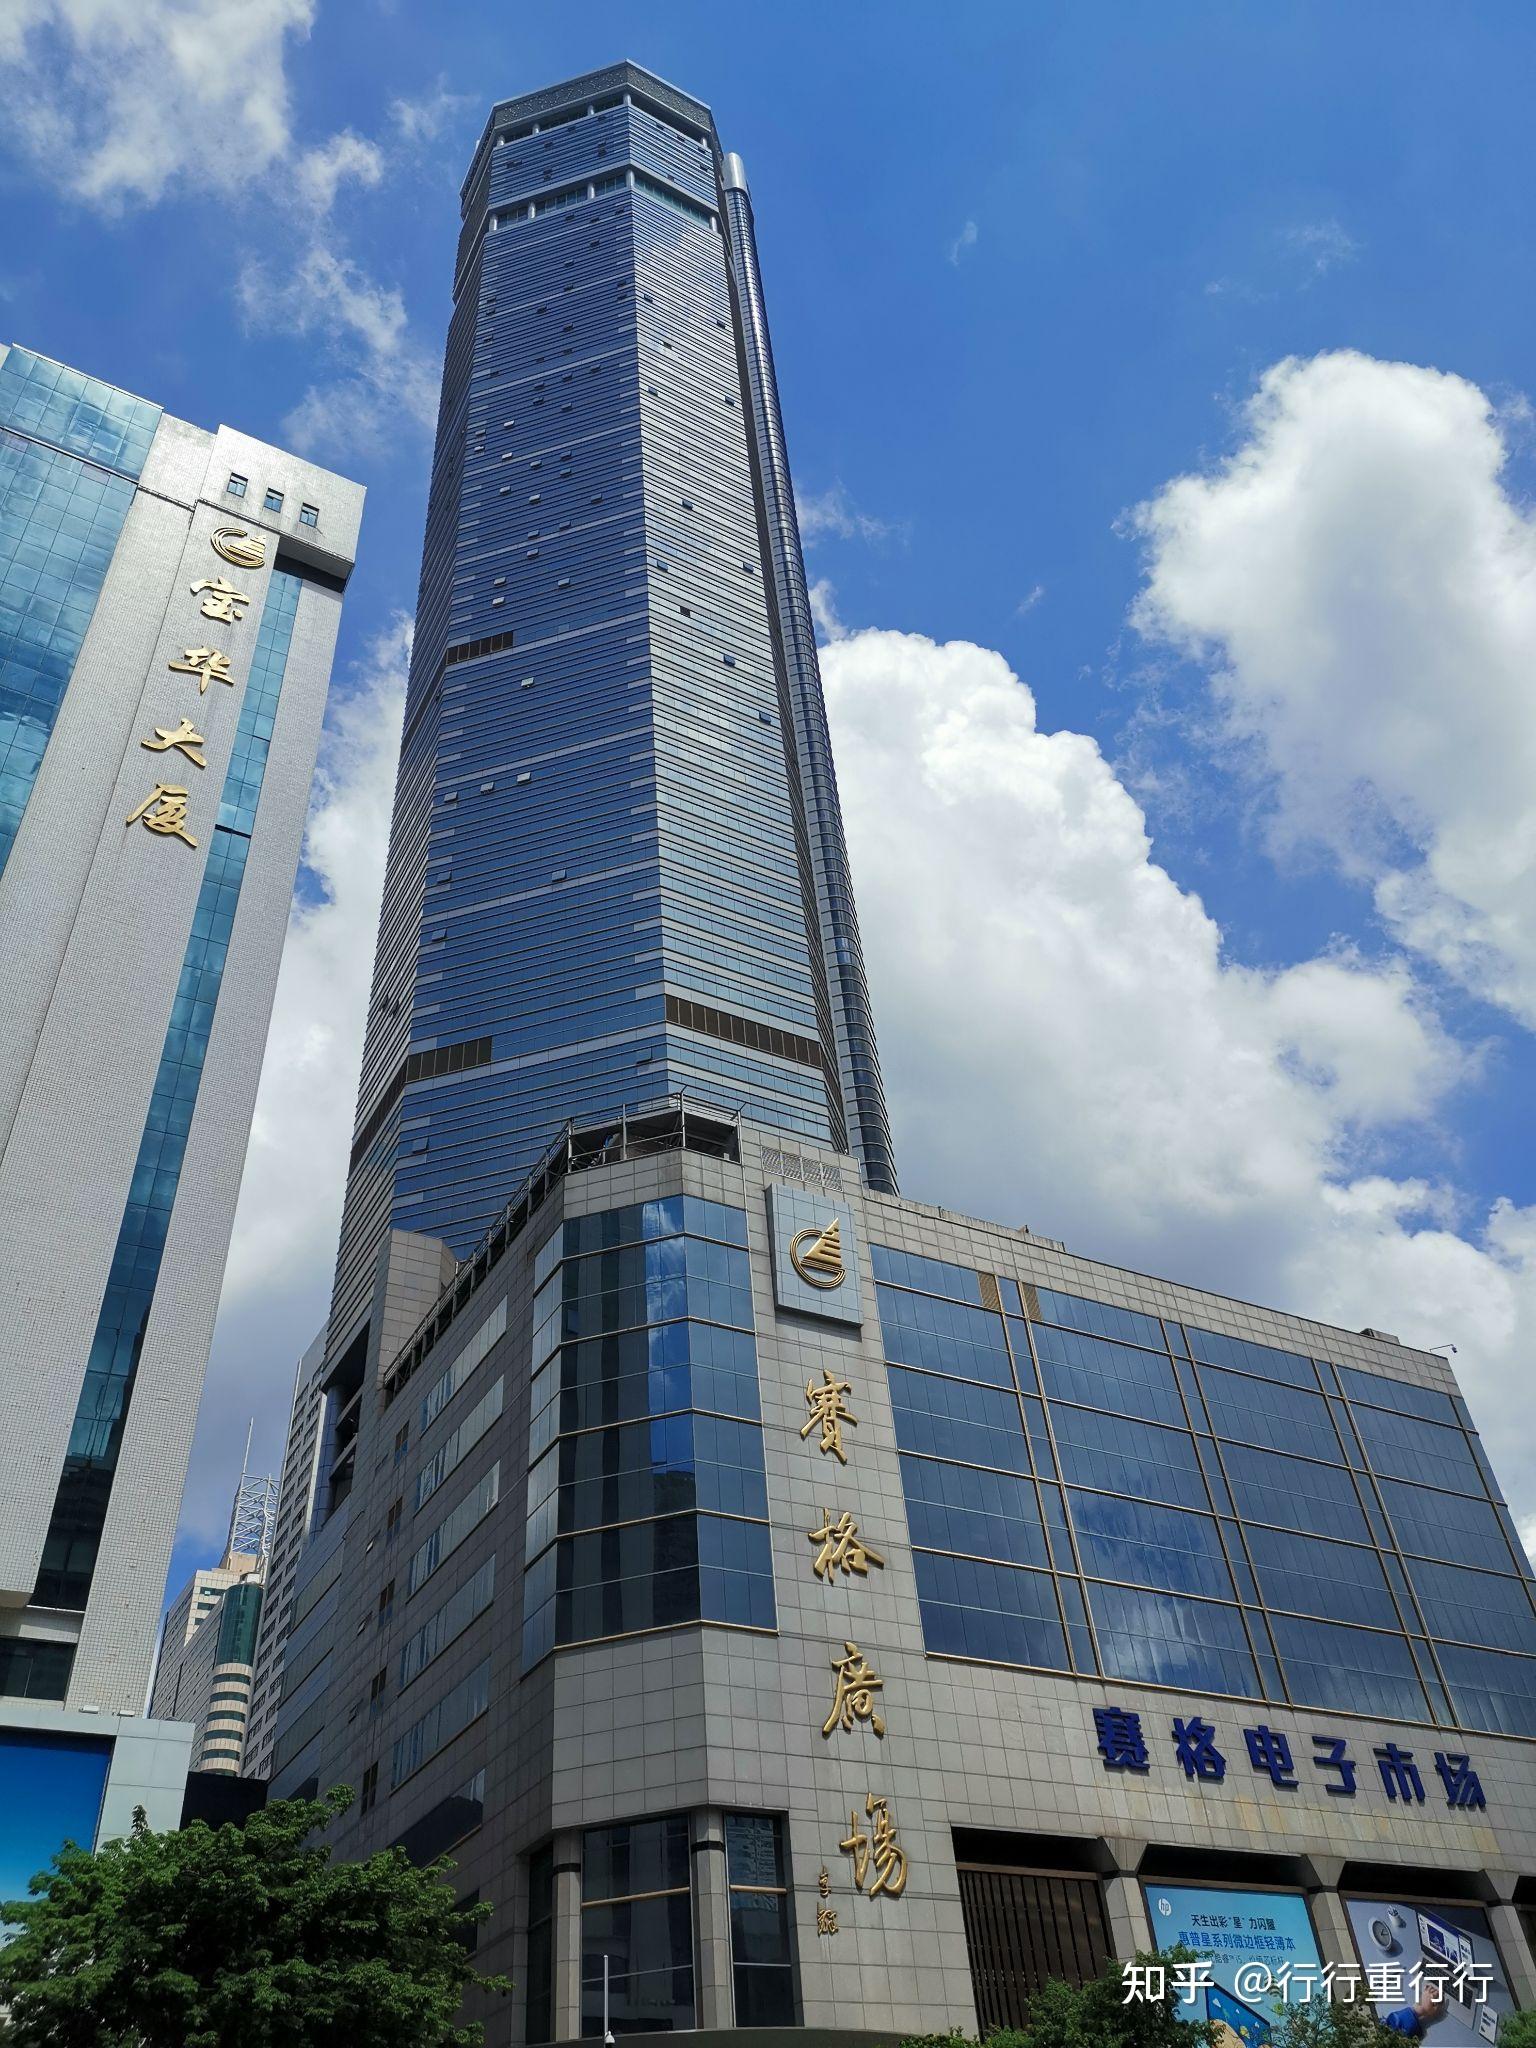 5月 18 日深圳华强北赛格大楼疑似发生倾斜和摇晃,大量人员被疏散